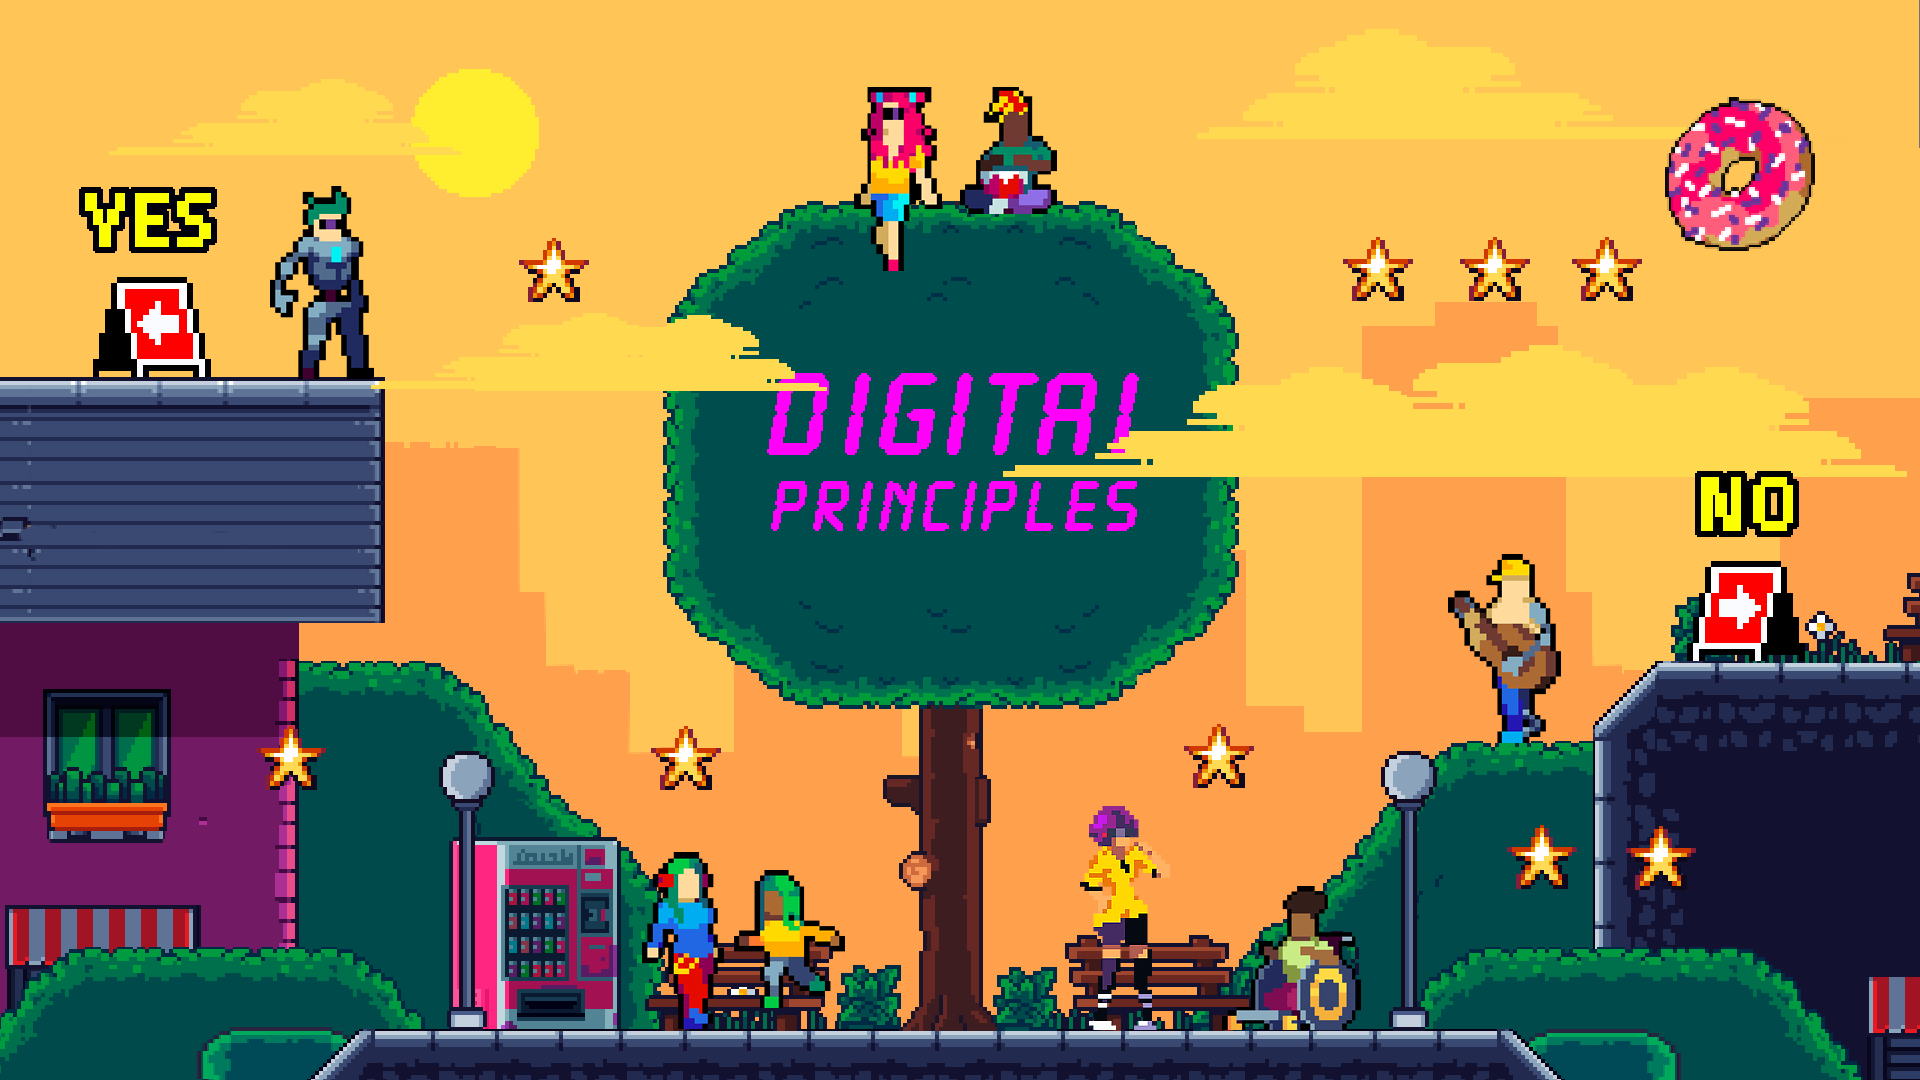 Digital principles video game poster